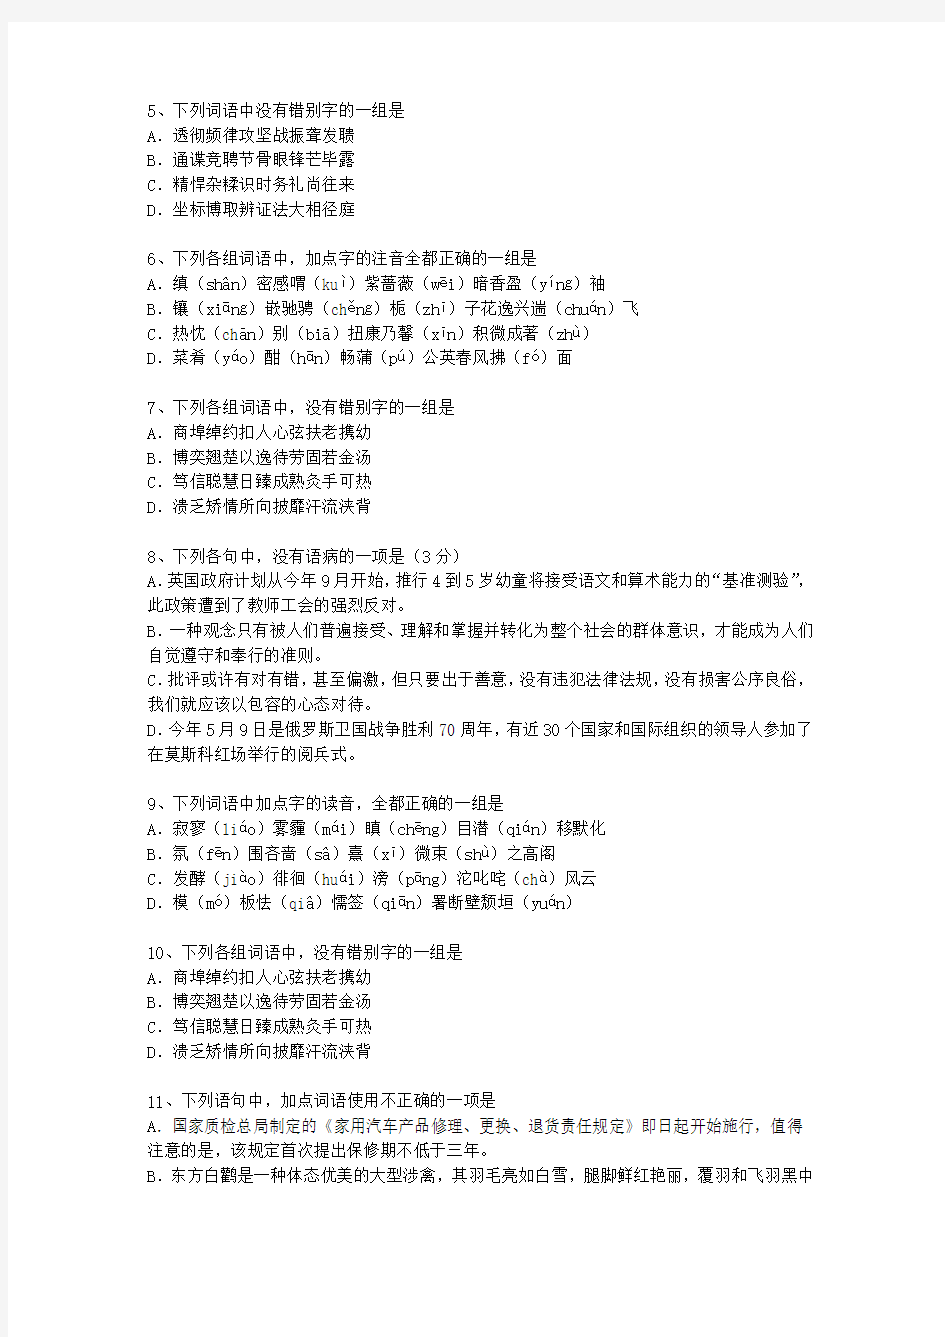 2013江苏省高考语文试卷及参考答案最新考试试题库(完整版)